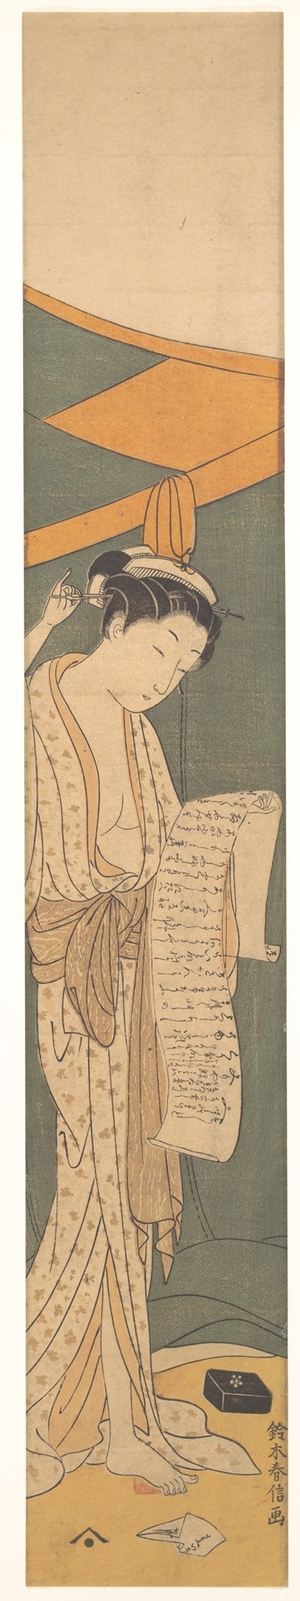 鈴木春信: Woman in Night Robe Reading a Letter - メトロポリタン美術館